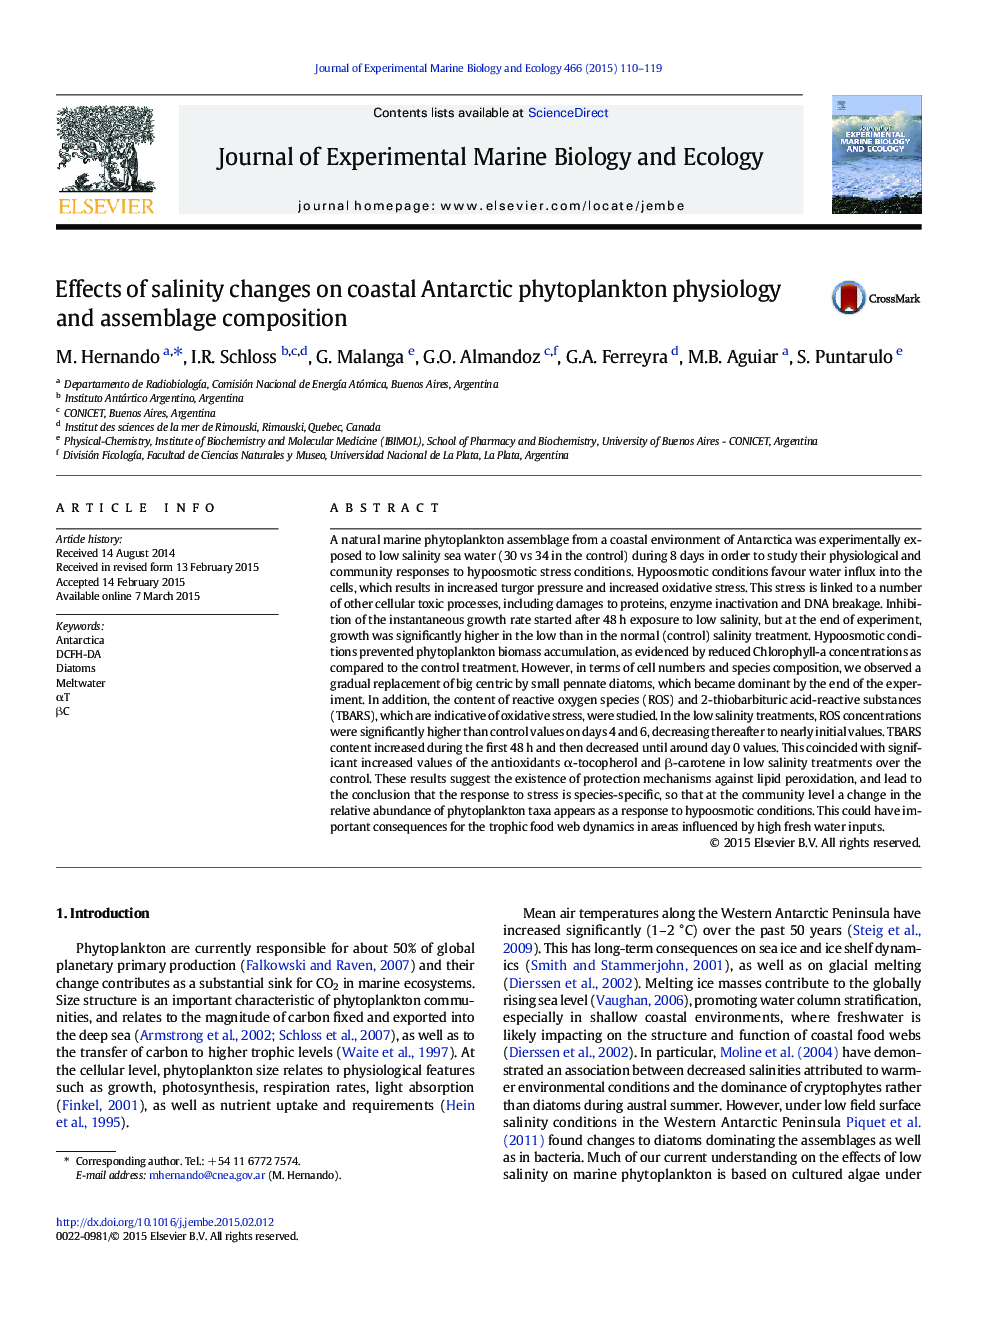 اثرات تغییرات شوری در فیزیولوژی فیتوپلانکتون قطب جنوب و ترکیب مونتاژ 